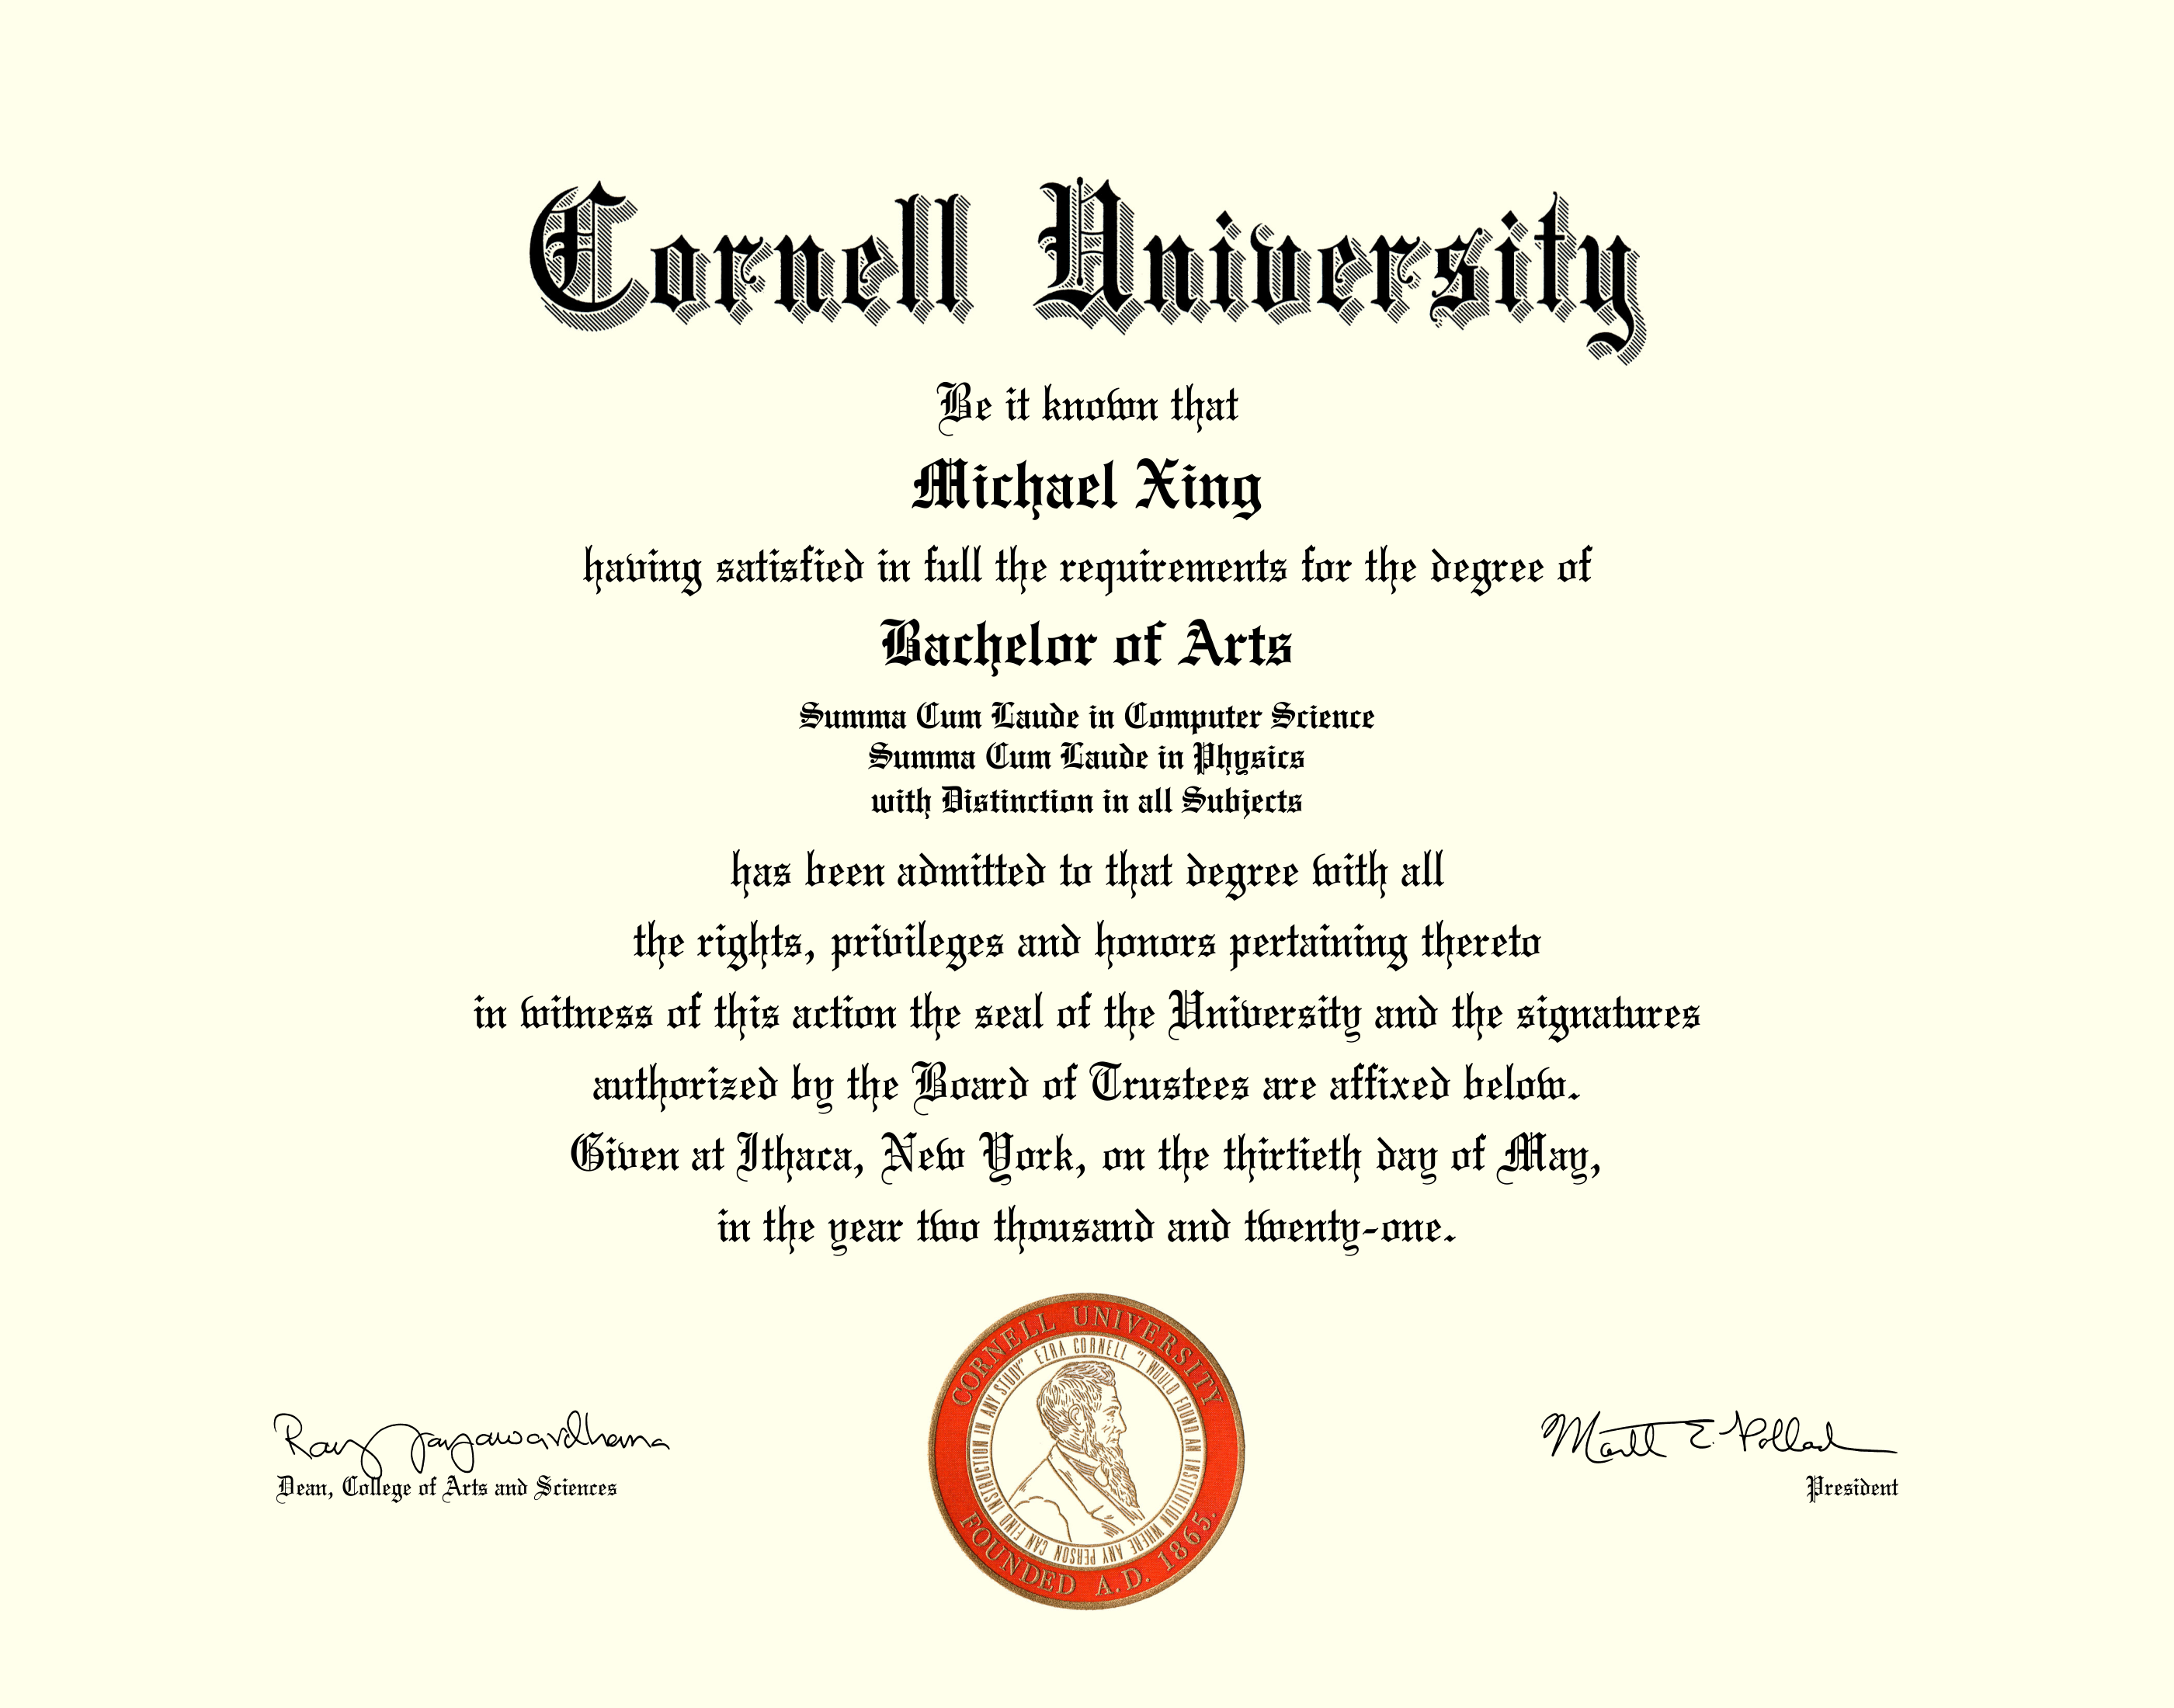 My diploma